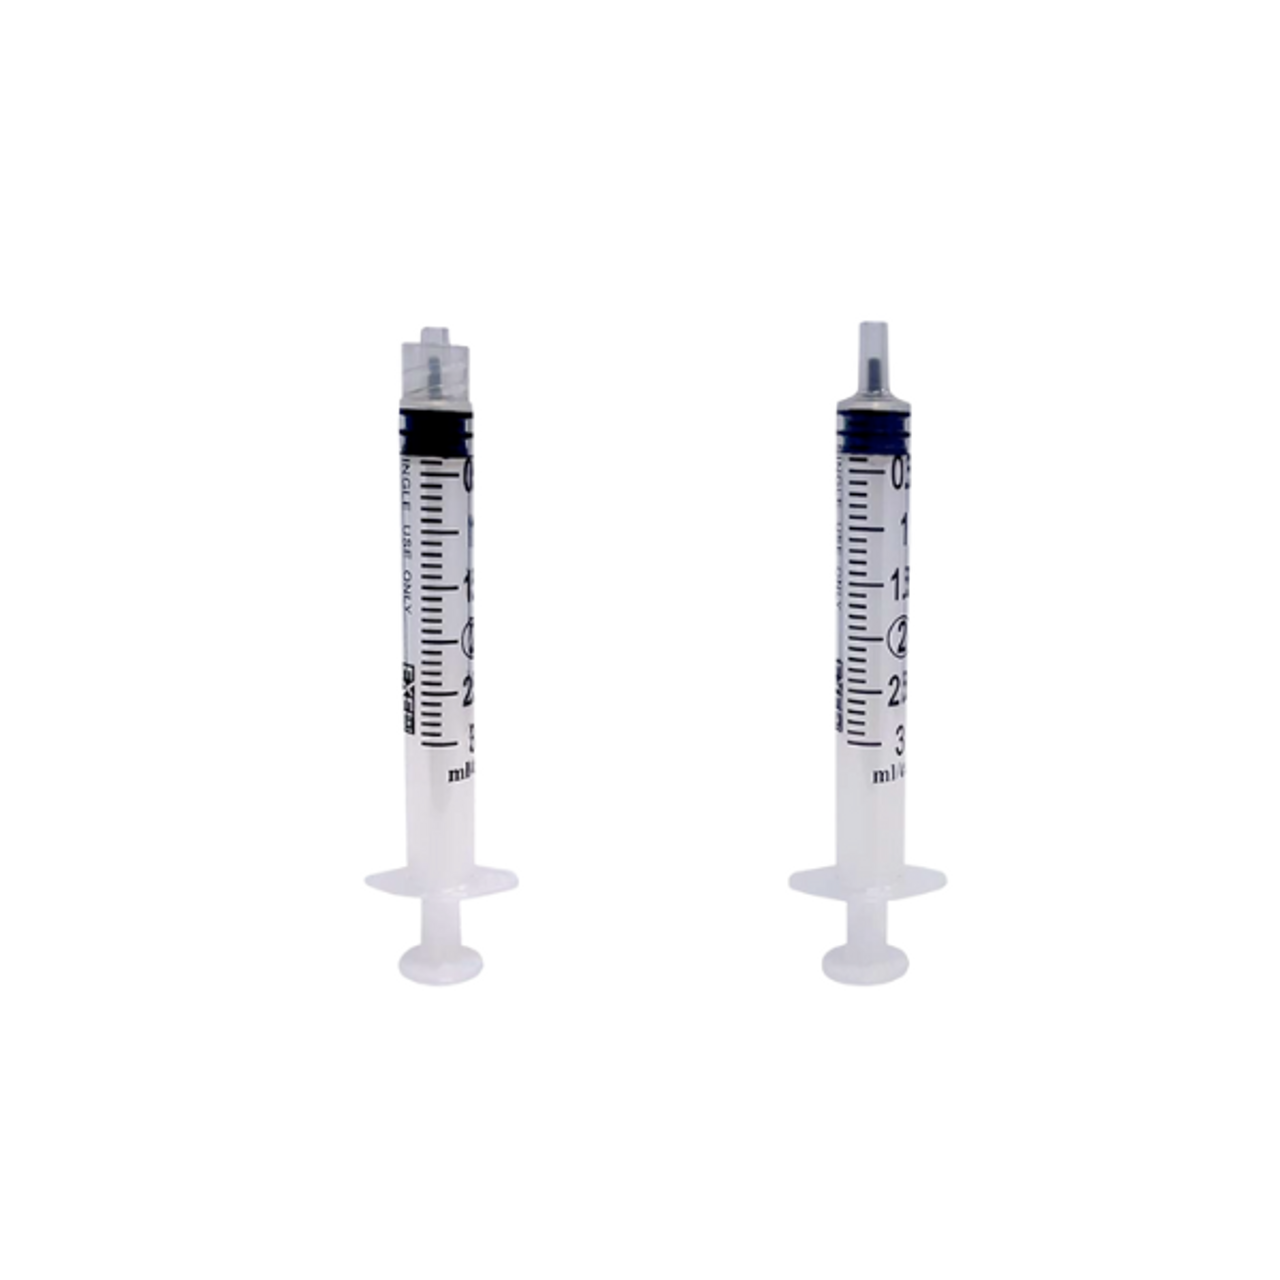 Exel Luer Lock Syringe With Needle, 5-6cc